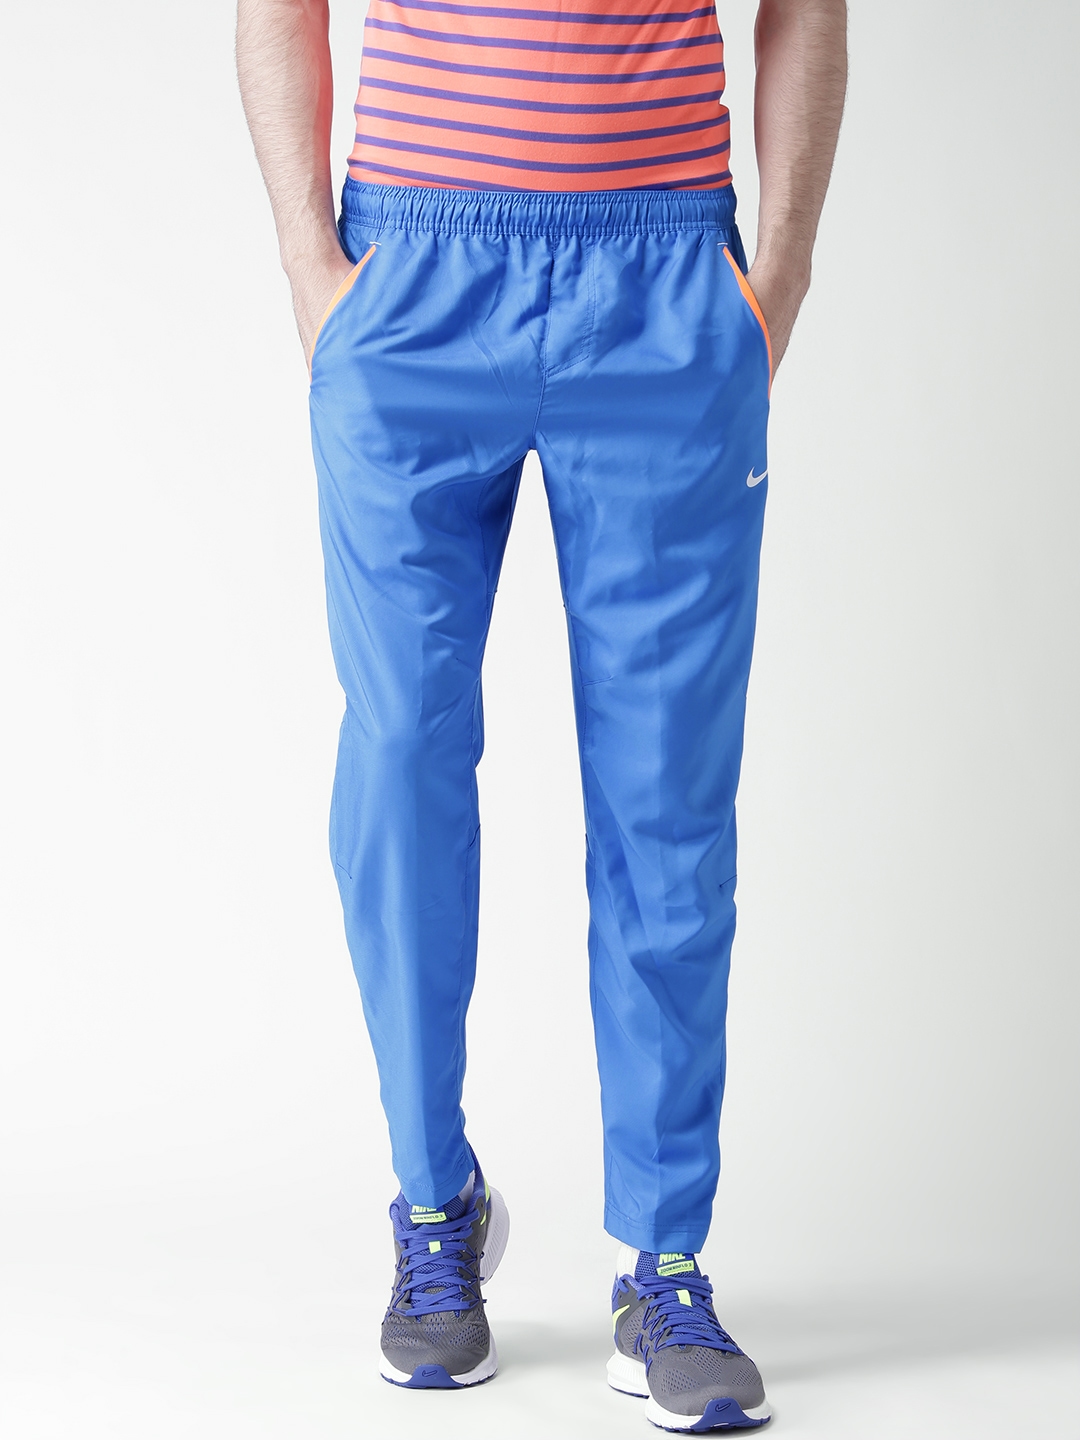 NS Lycra Laser Cut Athletic Slim Fit Track Pants  Sportswear Bottom Wear  for Men 